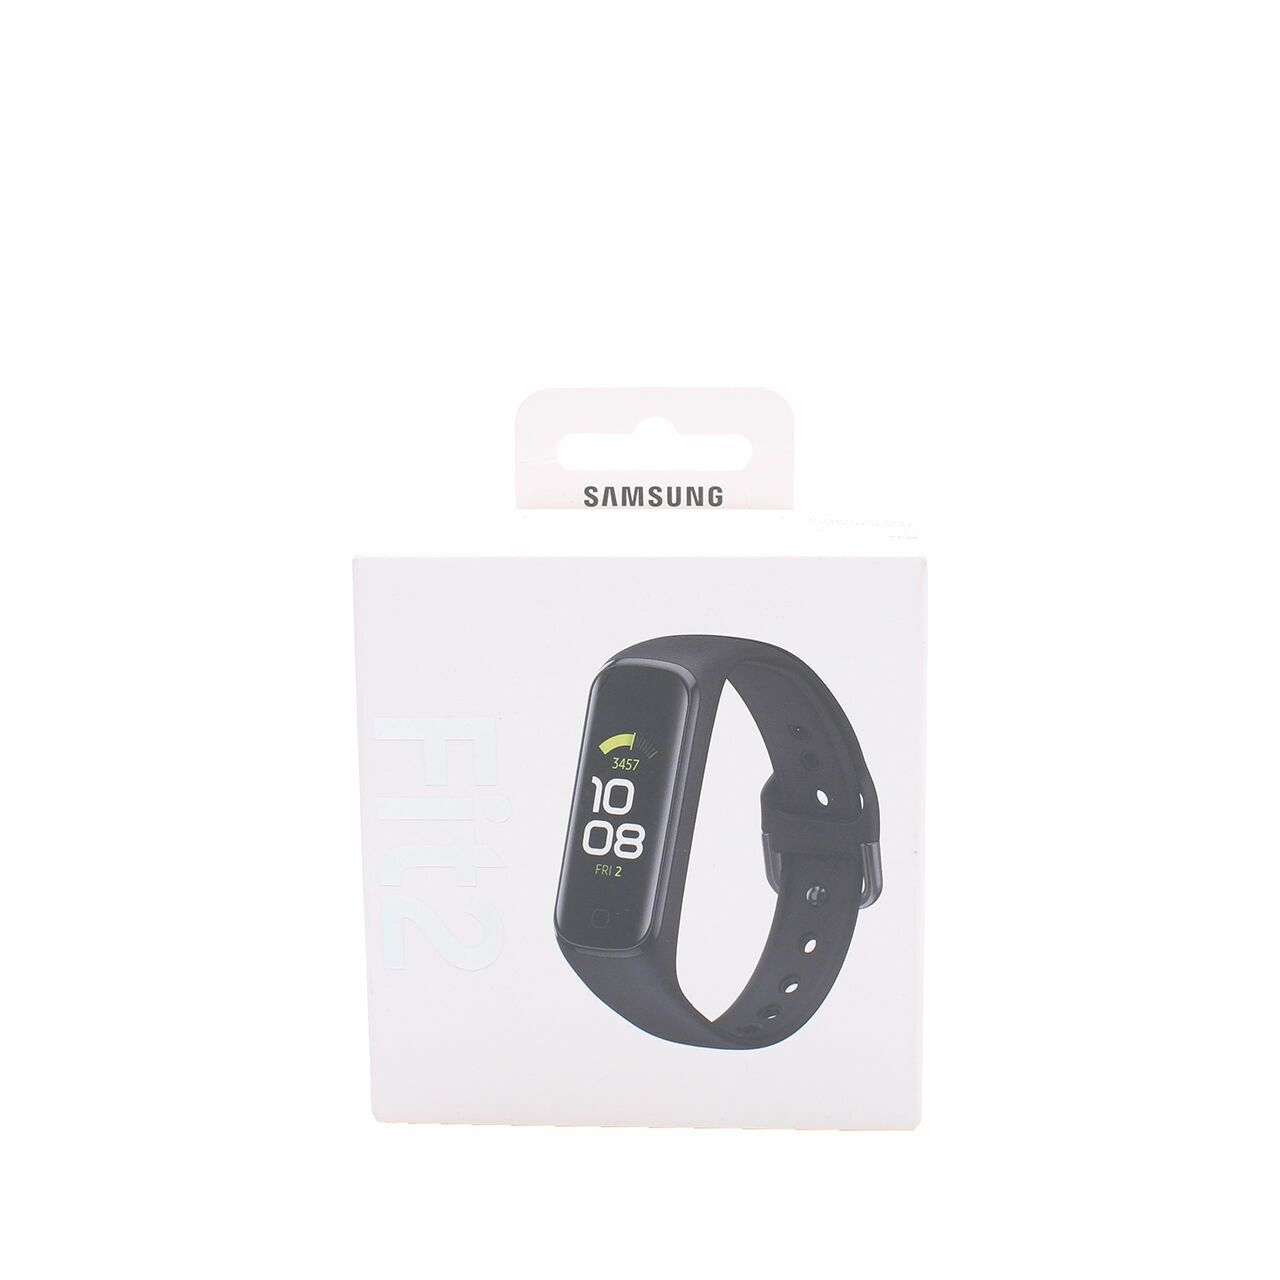 Samsung Galaxy Fit2 Black Watch 